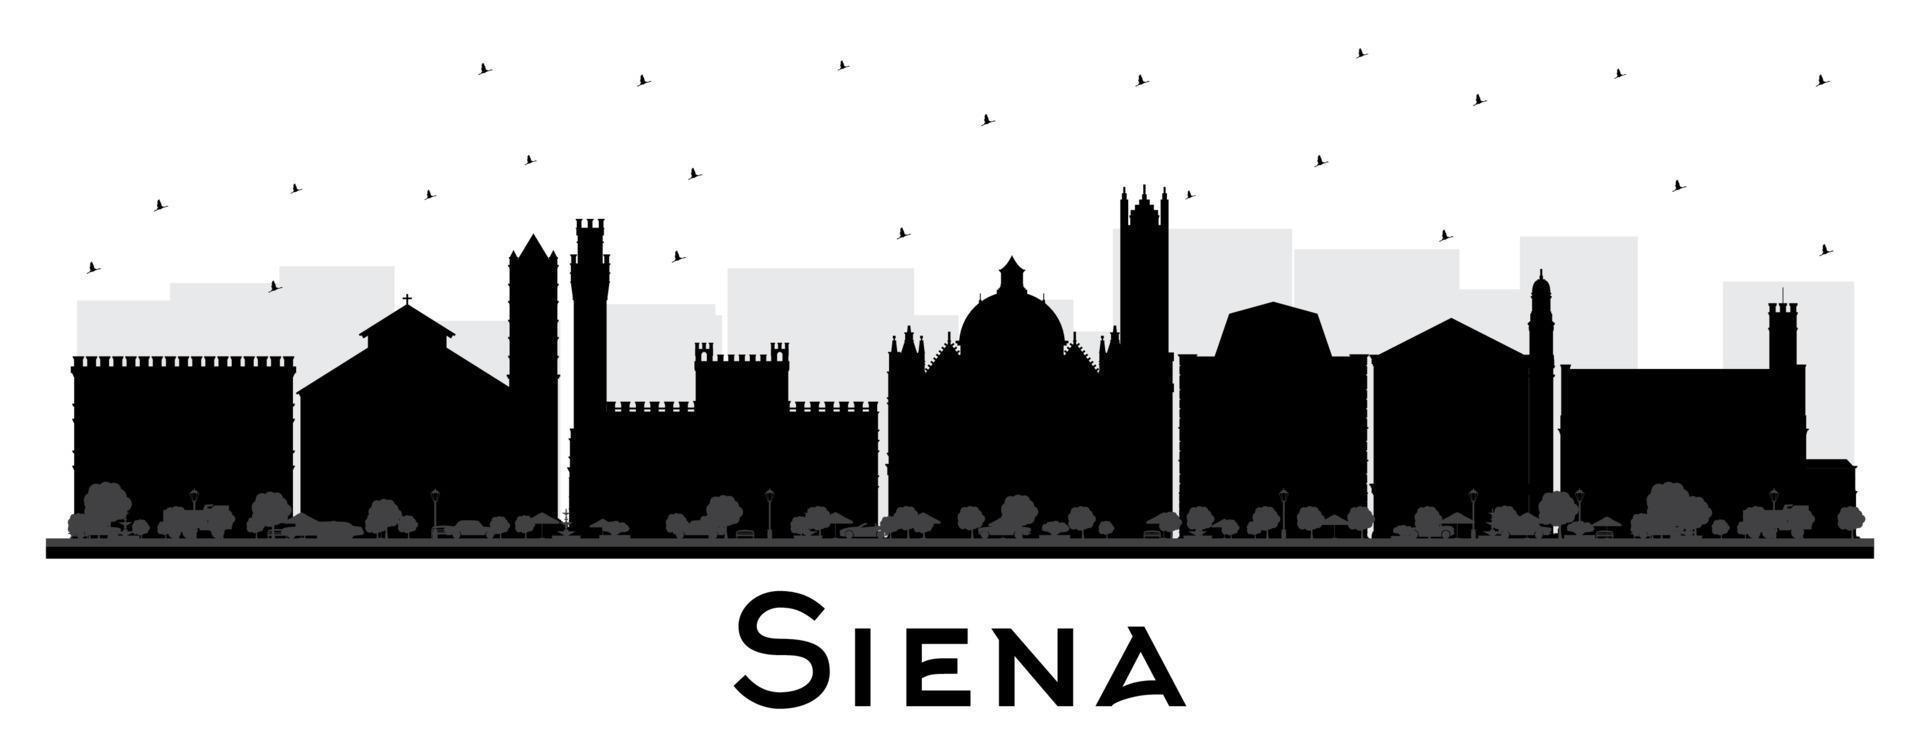 siena toscana itália cidade skyline silhueta com edifícios pretos isolados no branco. vetor